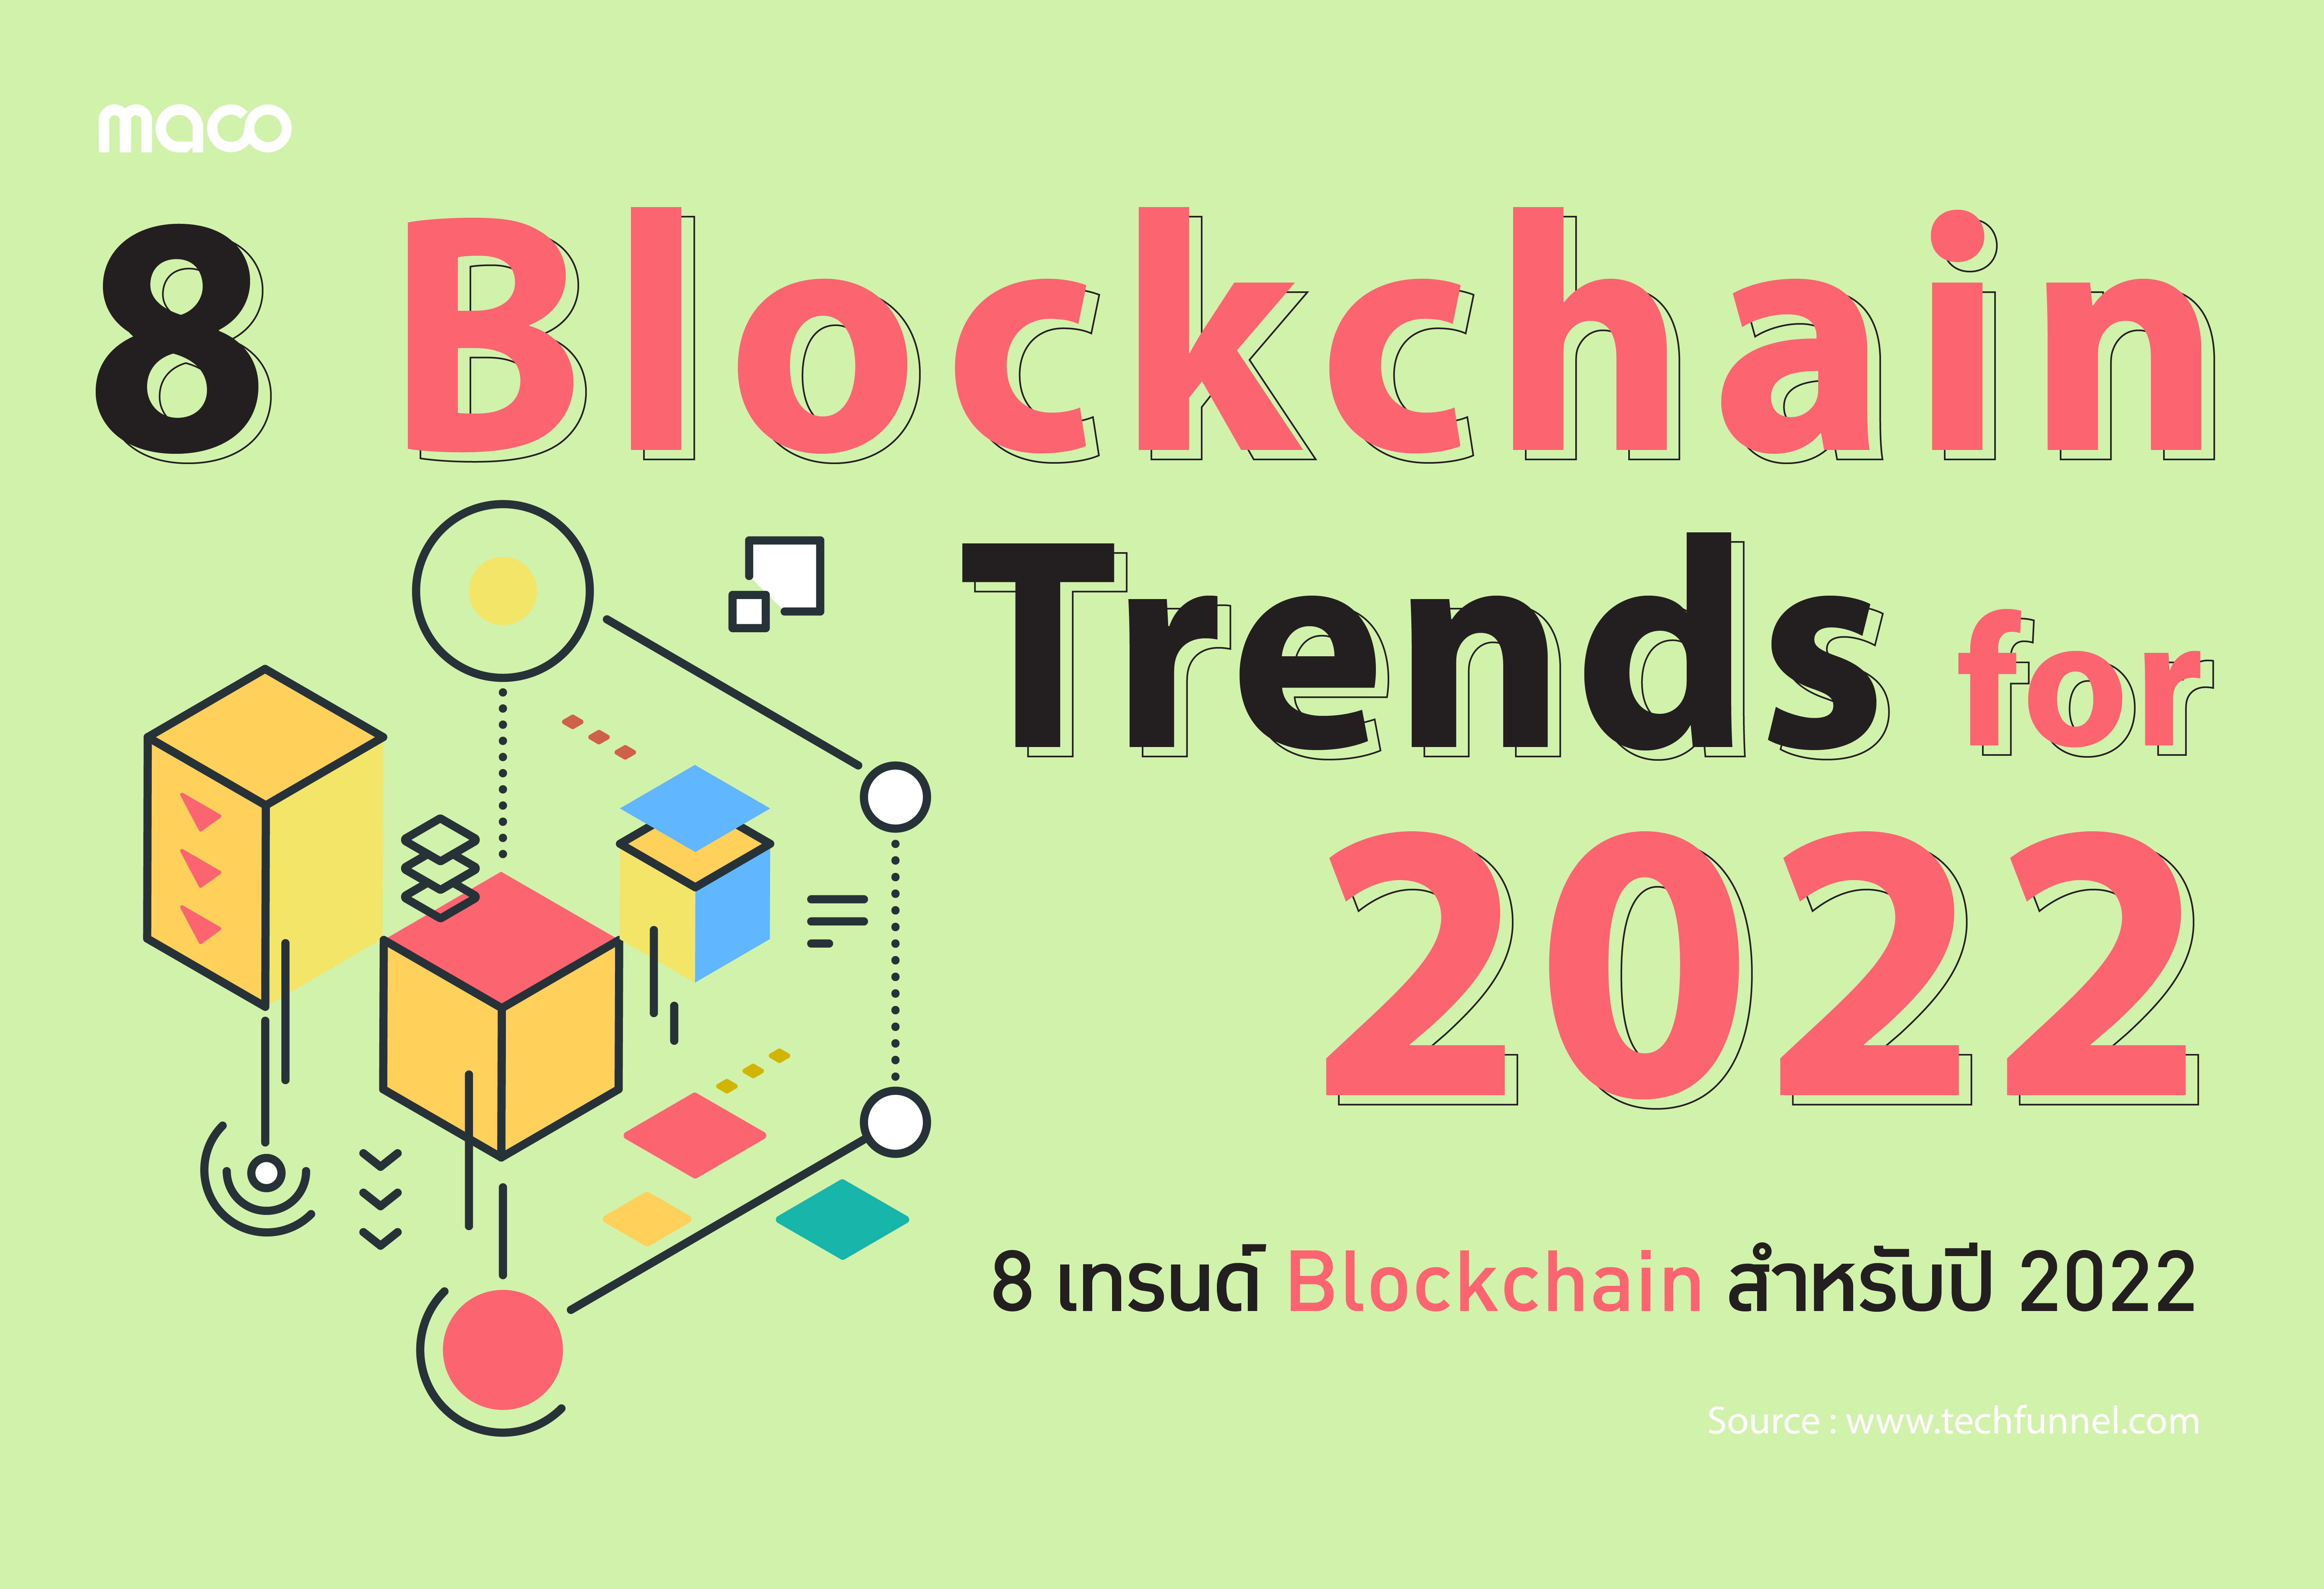 8 เทรนด์ Blockchain สำหรับปี 2022